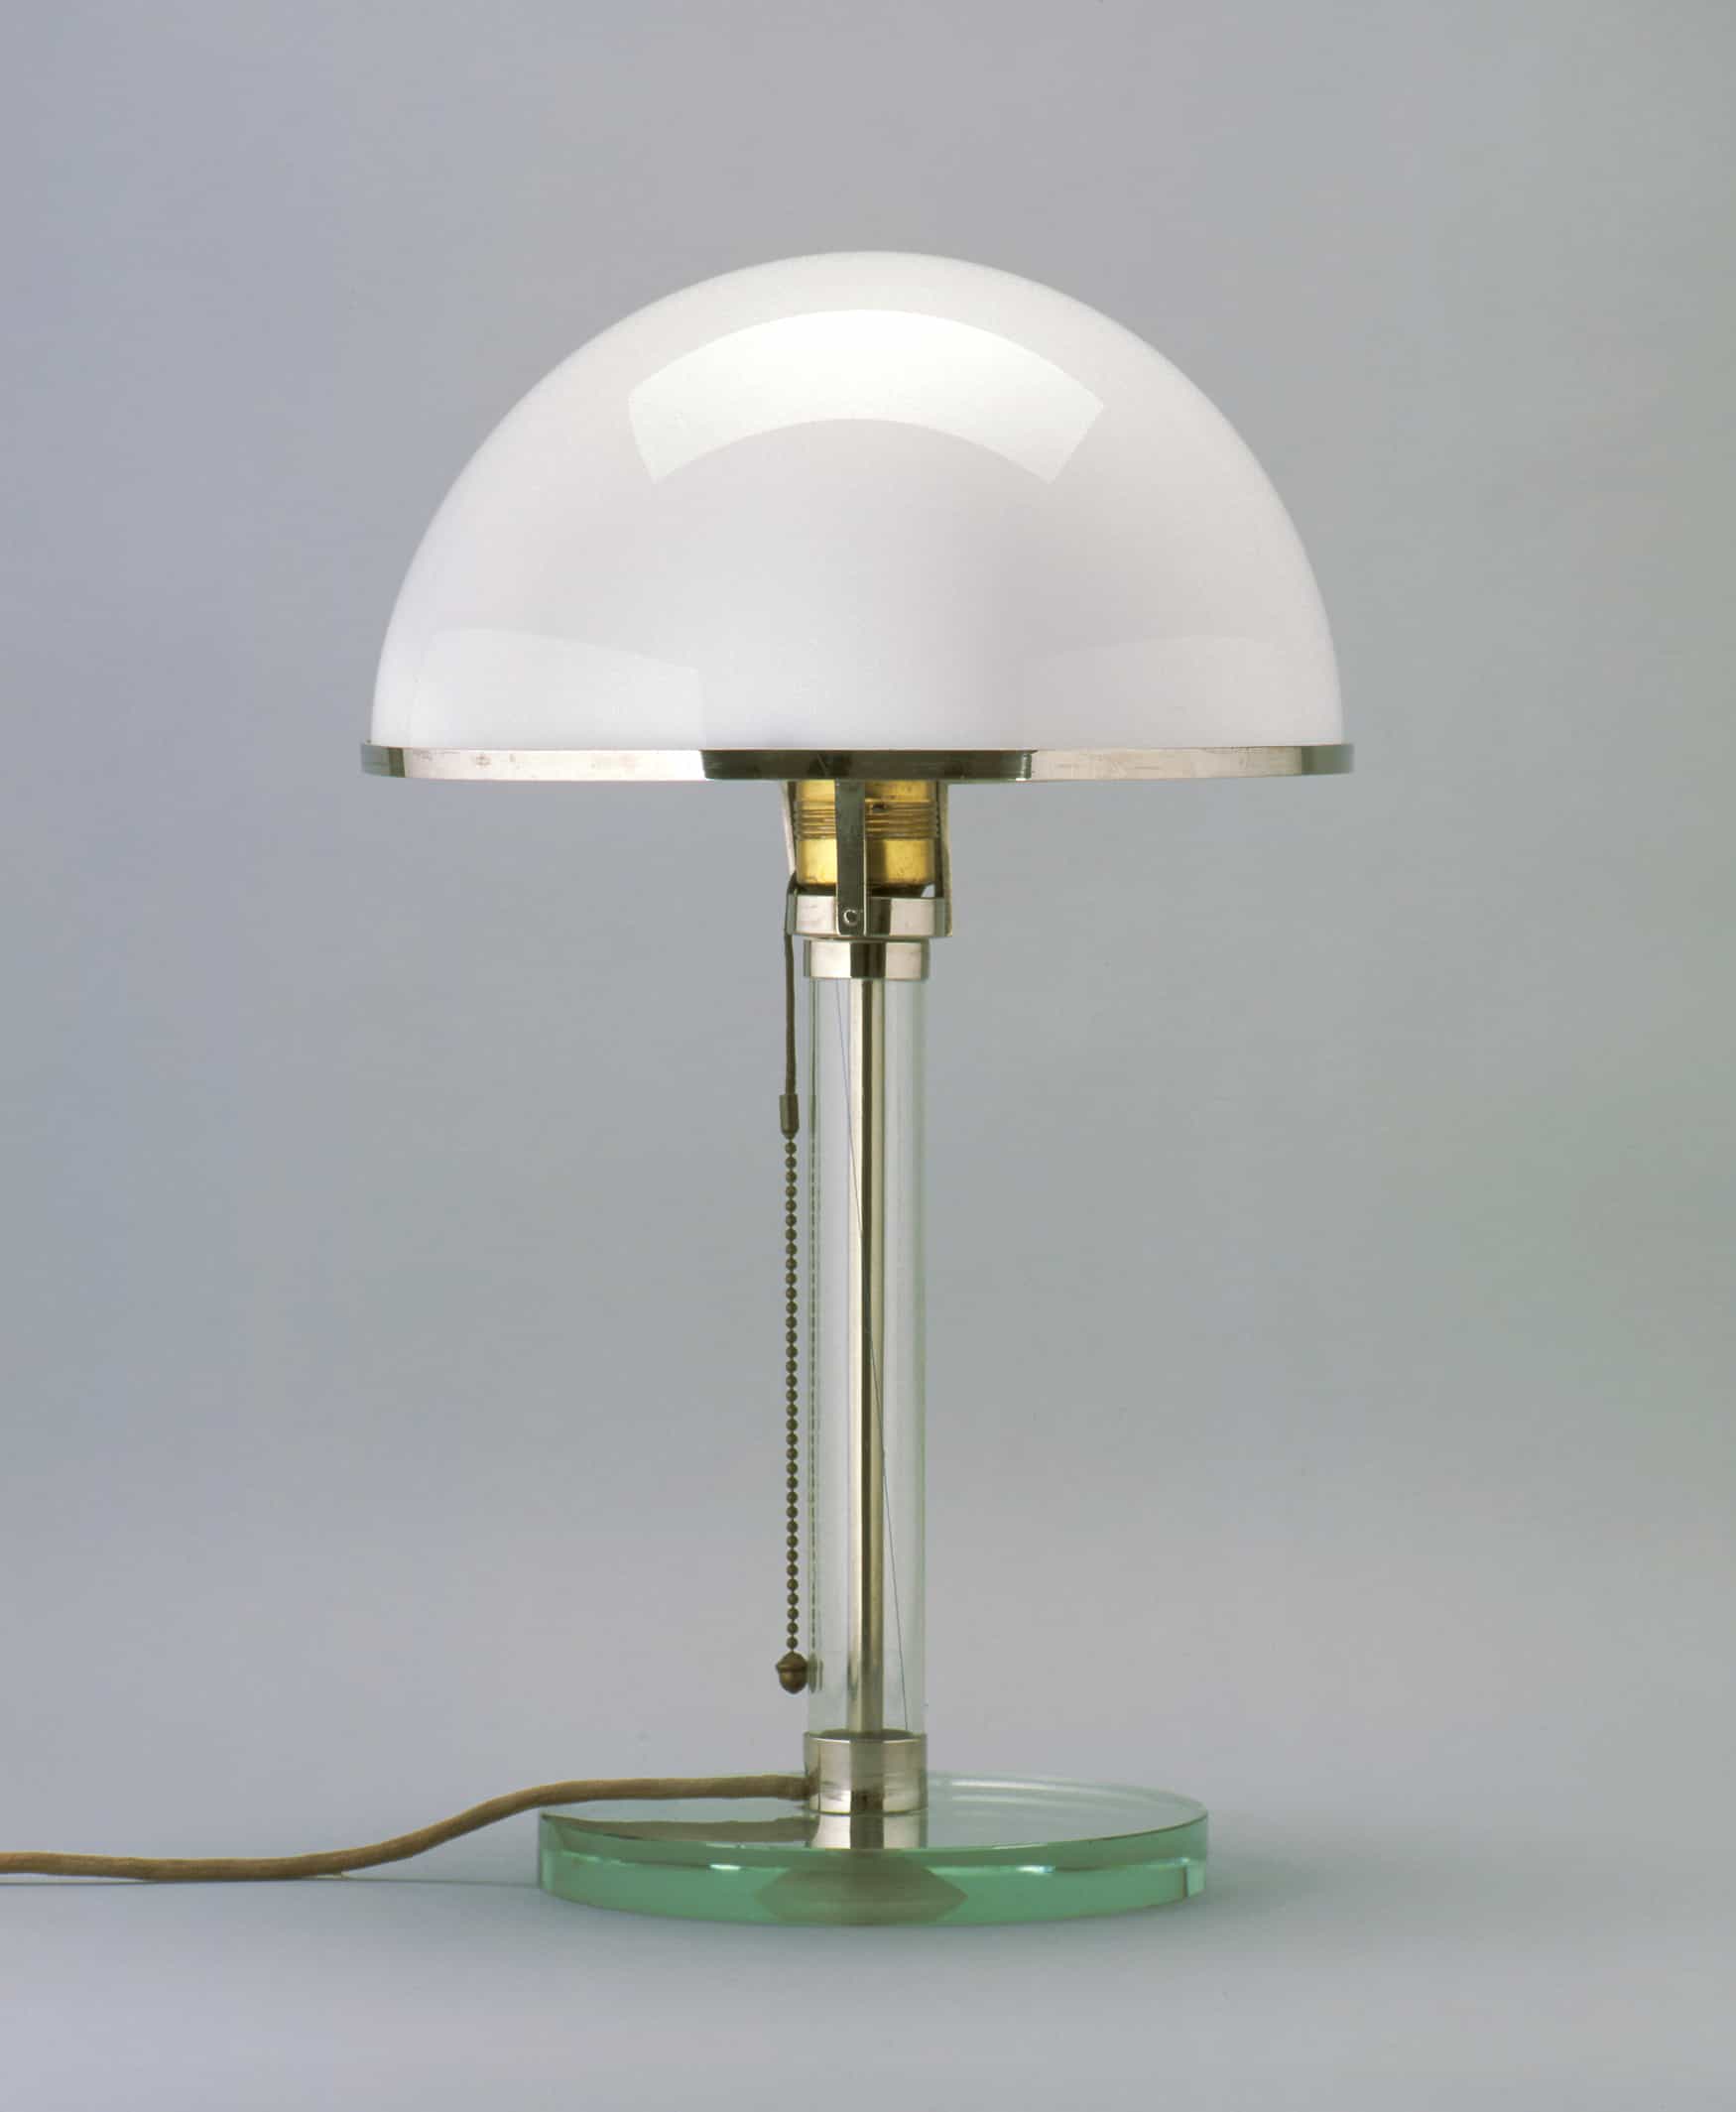 Archivbild. Eine schlichte kleine Lampe. Auf einem kurzen Glasrohr befindet sich ein halbrunder Milchglas-Lampenschirm.